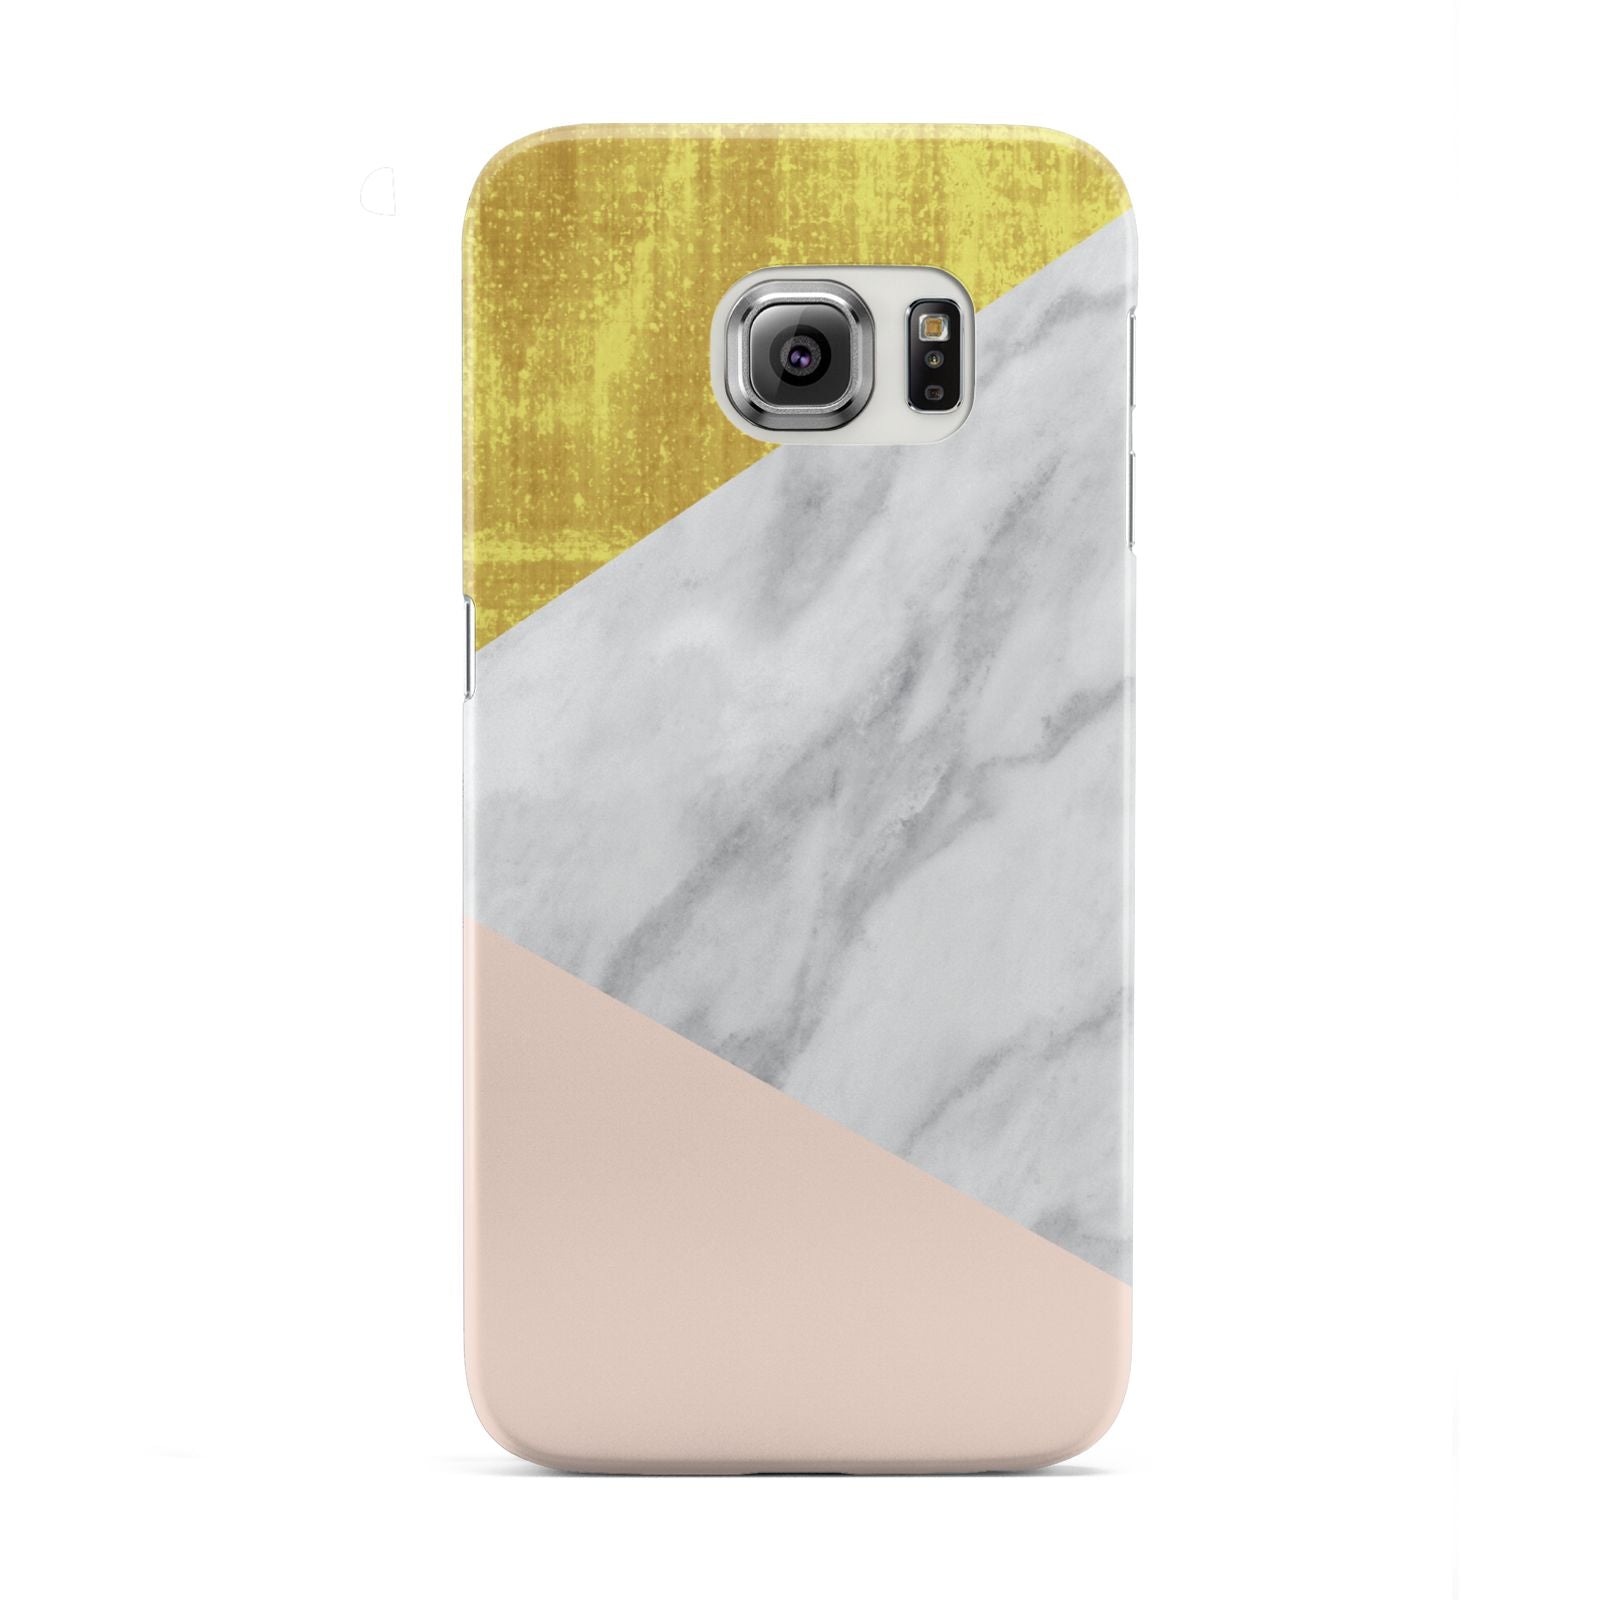 Marble White Gold Foil Peach Samsung Galaxy S6 Edge Case